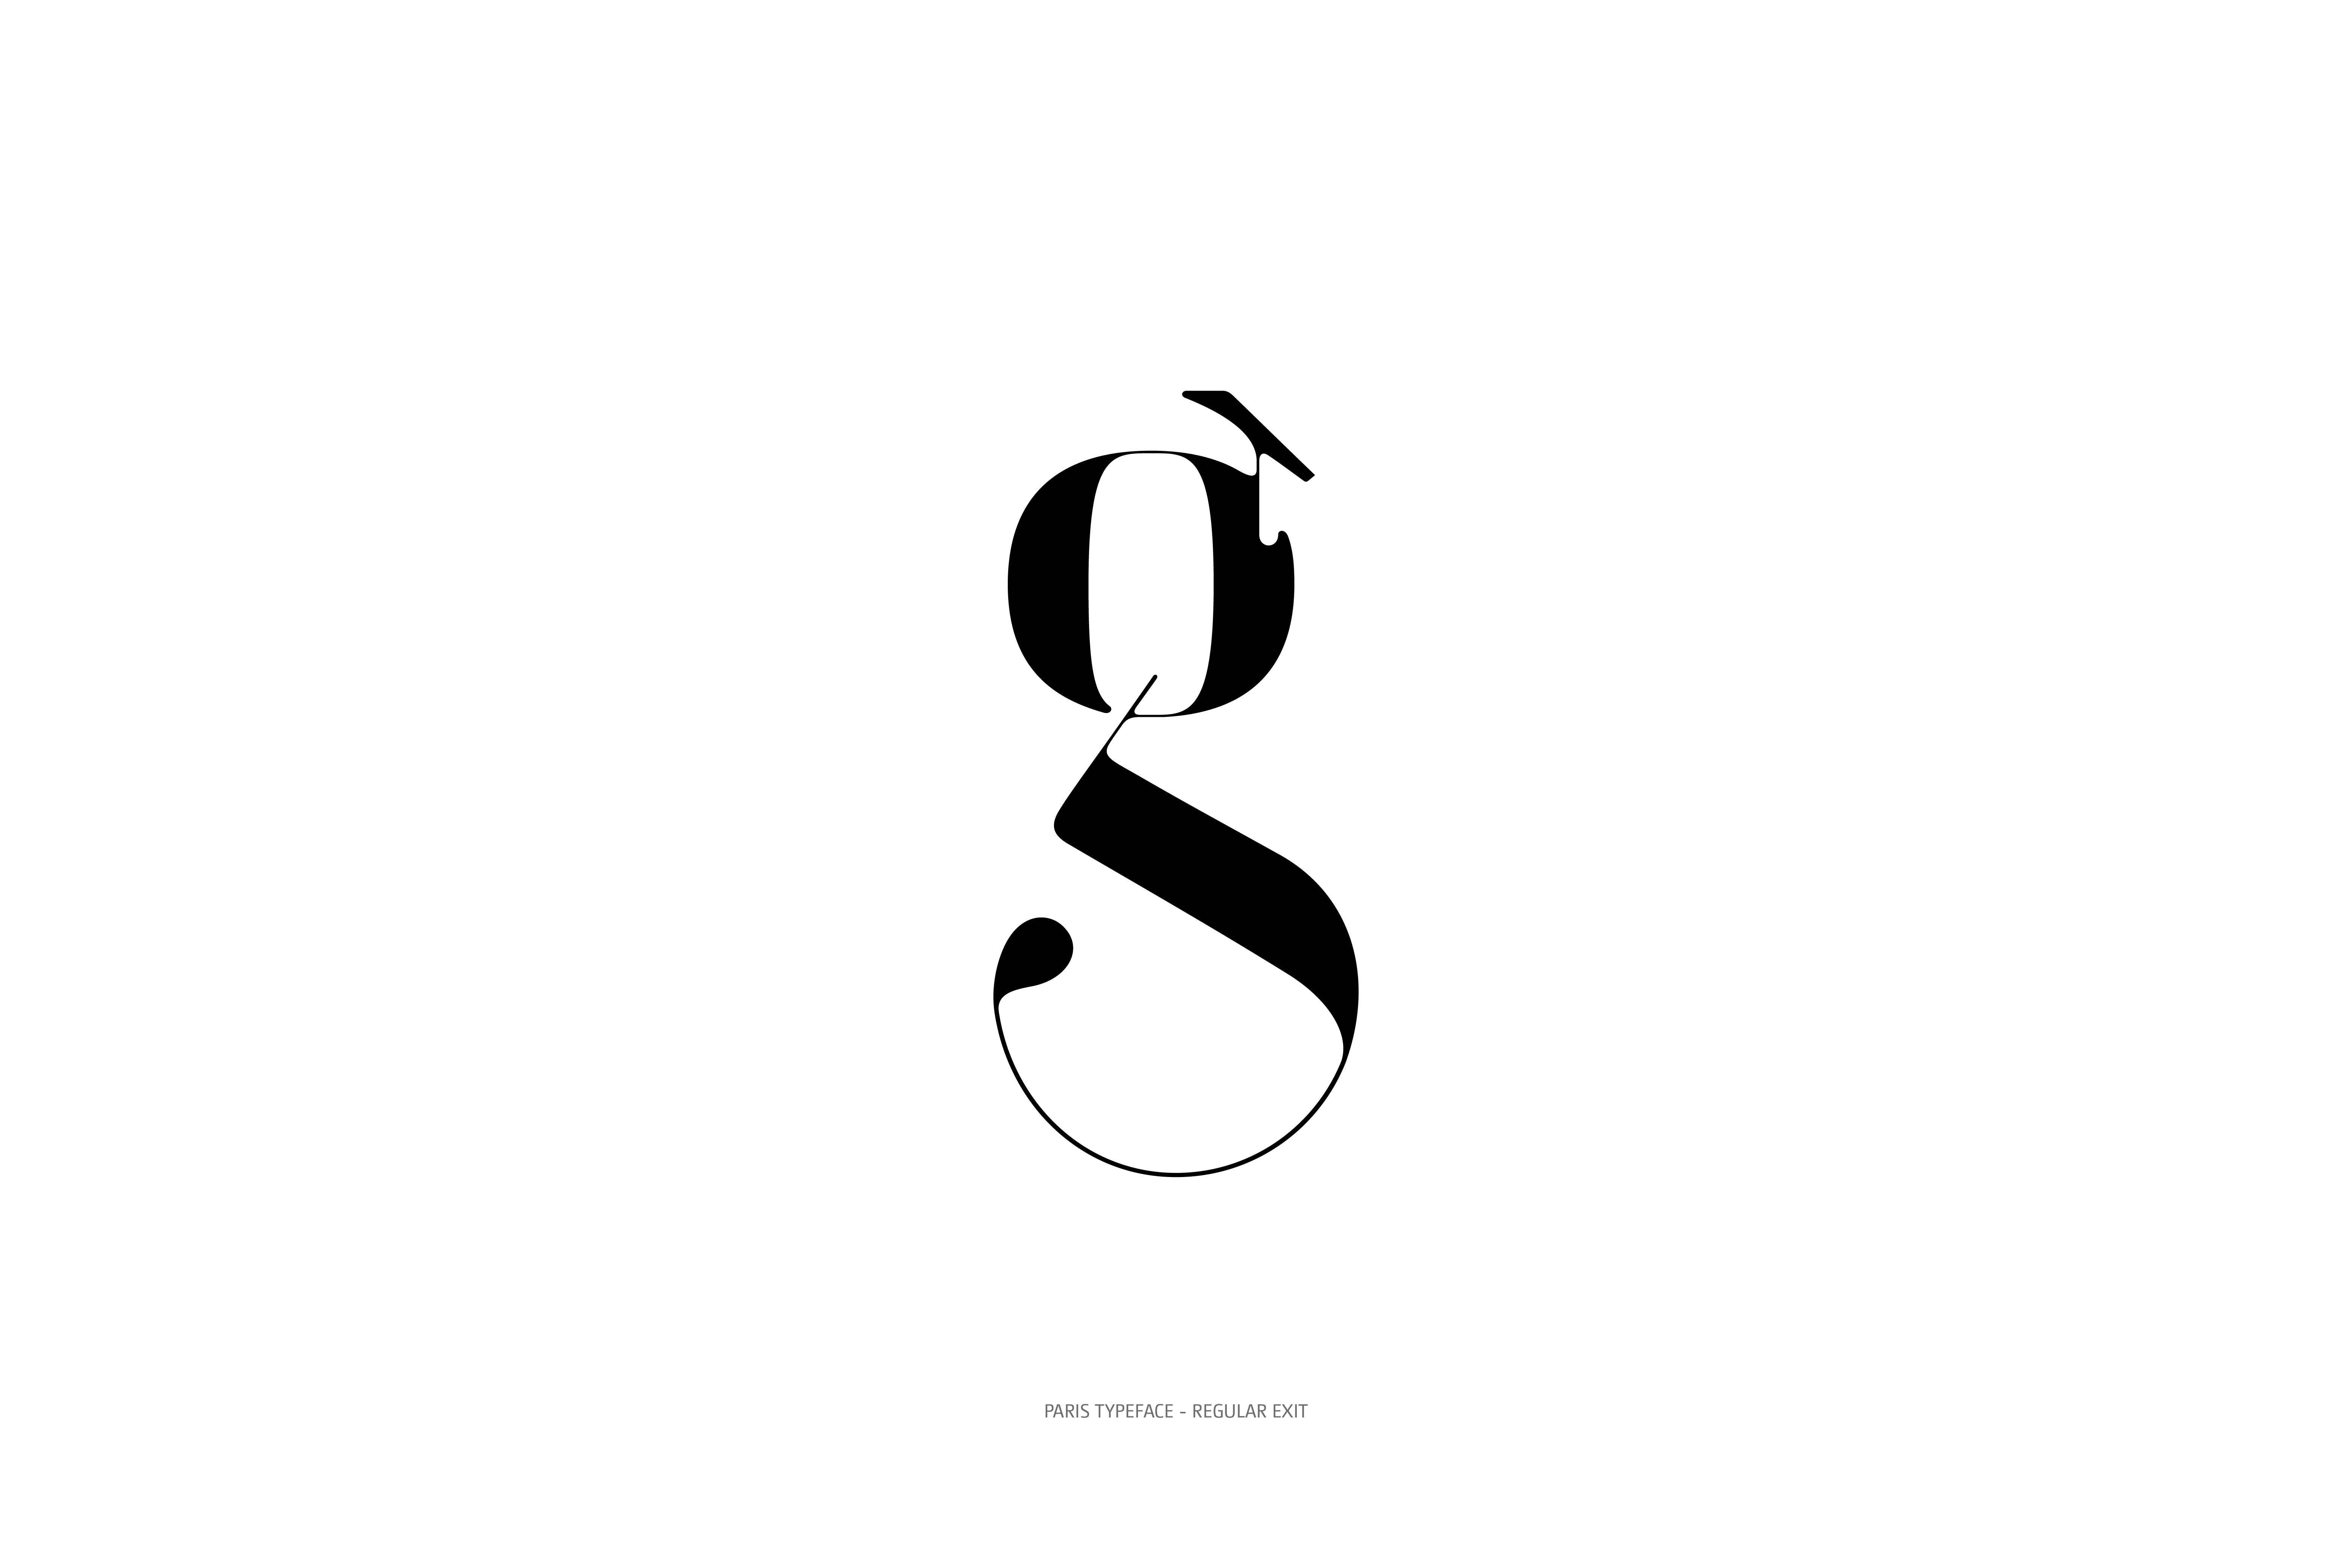 Paris Typeface Regular Exit g